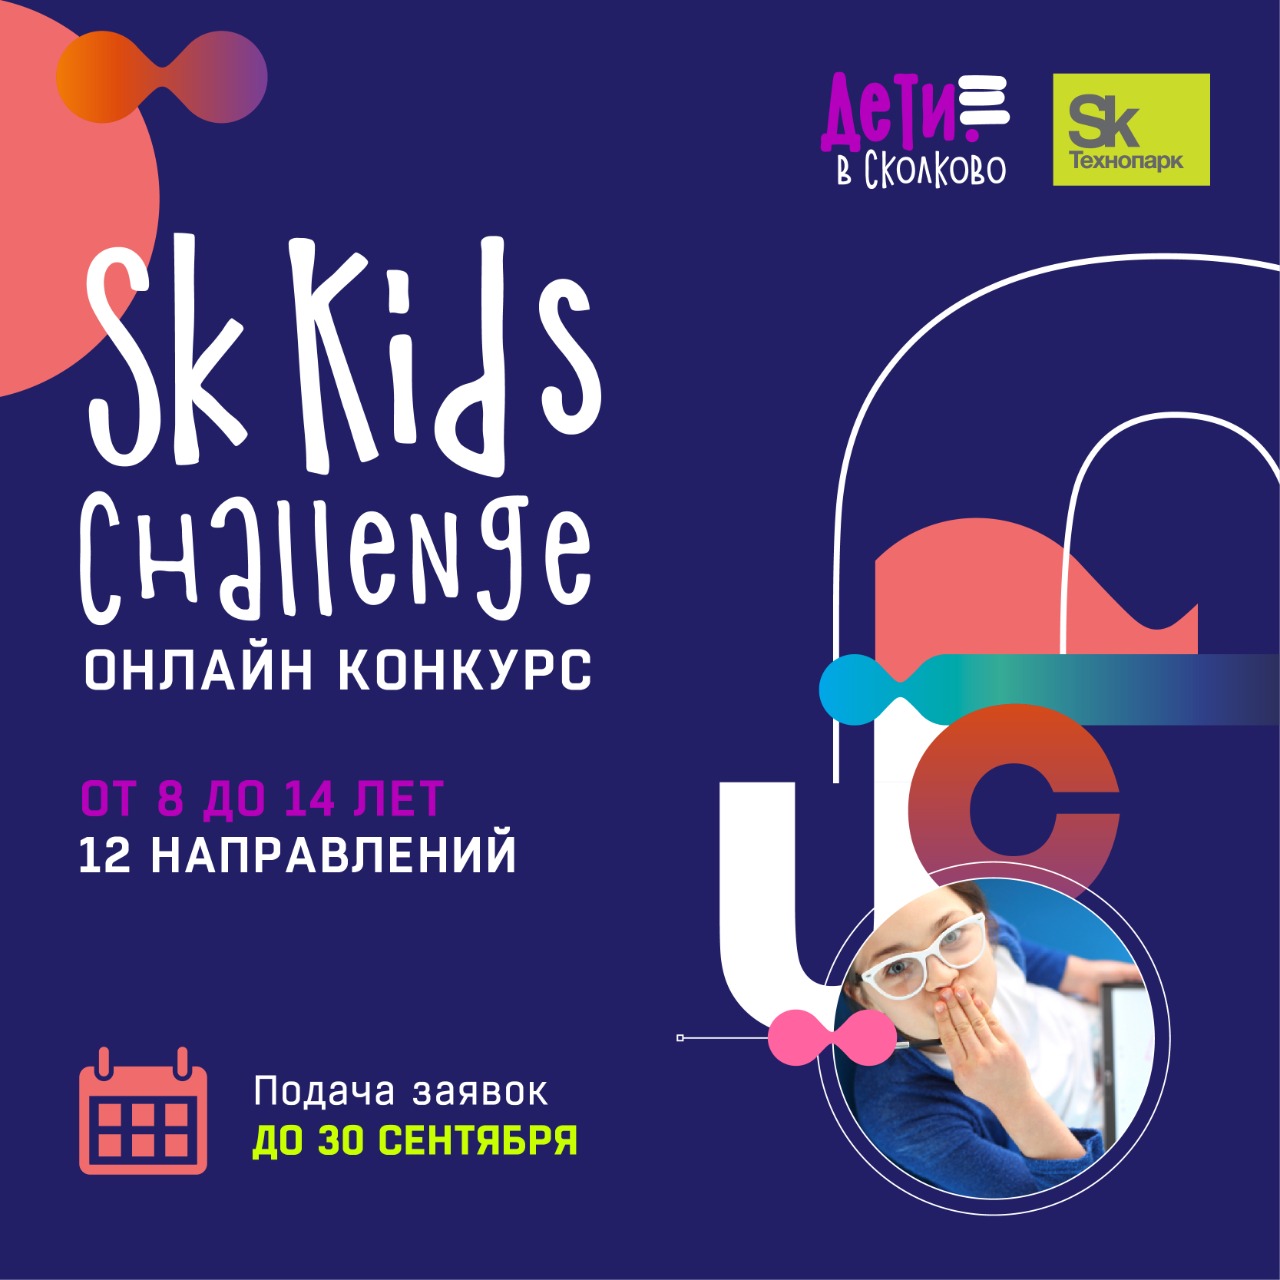 Приглашаем детей 7-14 лет на конкурс технологических проектов «Сколково» Sk Kids Challenge